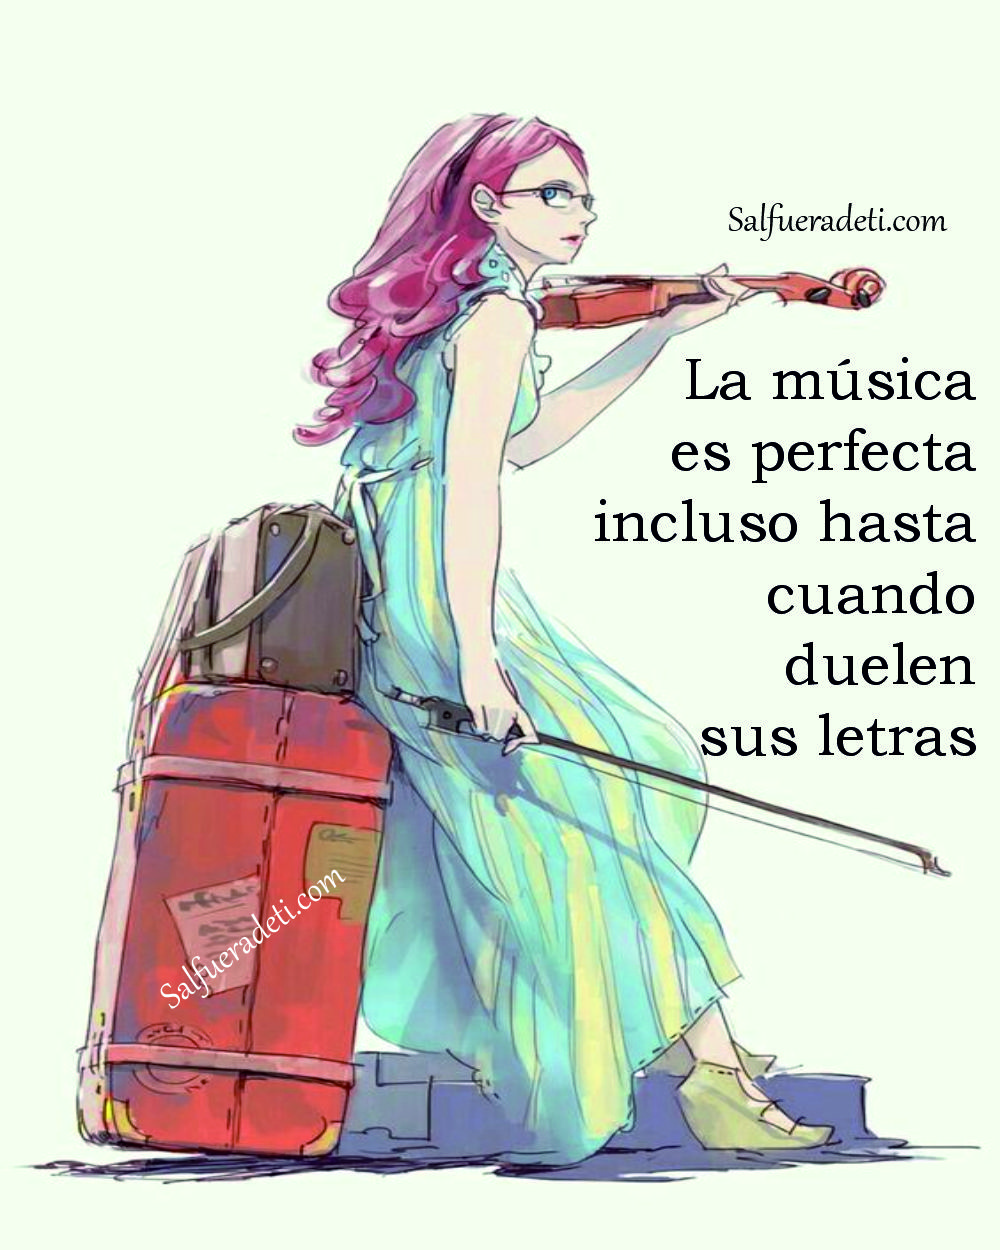 Si la música es perfecta incluso hasta cuando duelen sus letras...